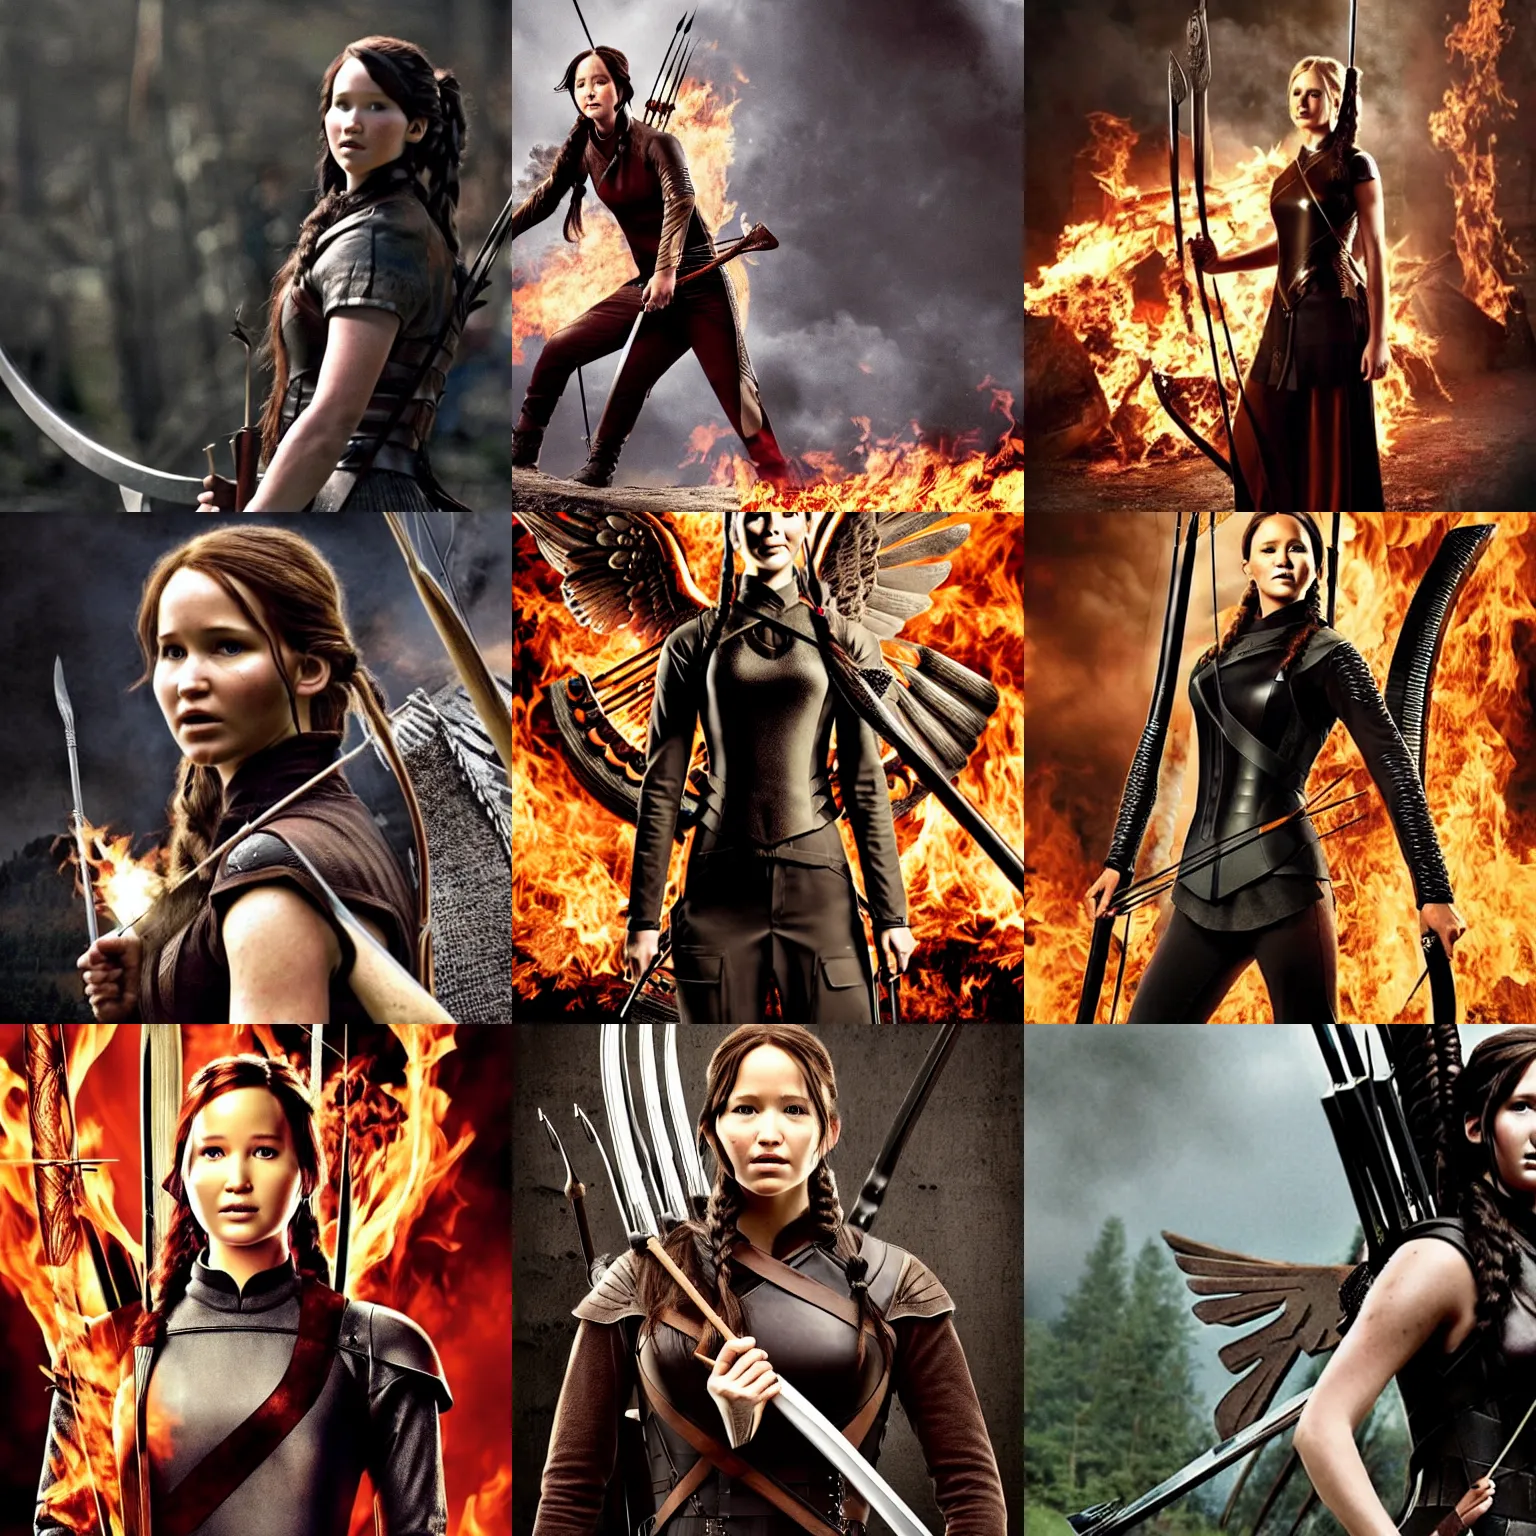 Prompt: Katniss Everdeen as a Viking shieldmaiden, holding a sword